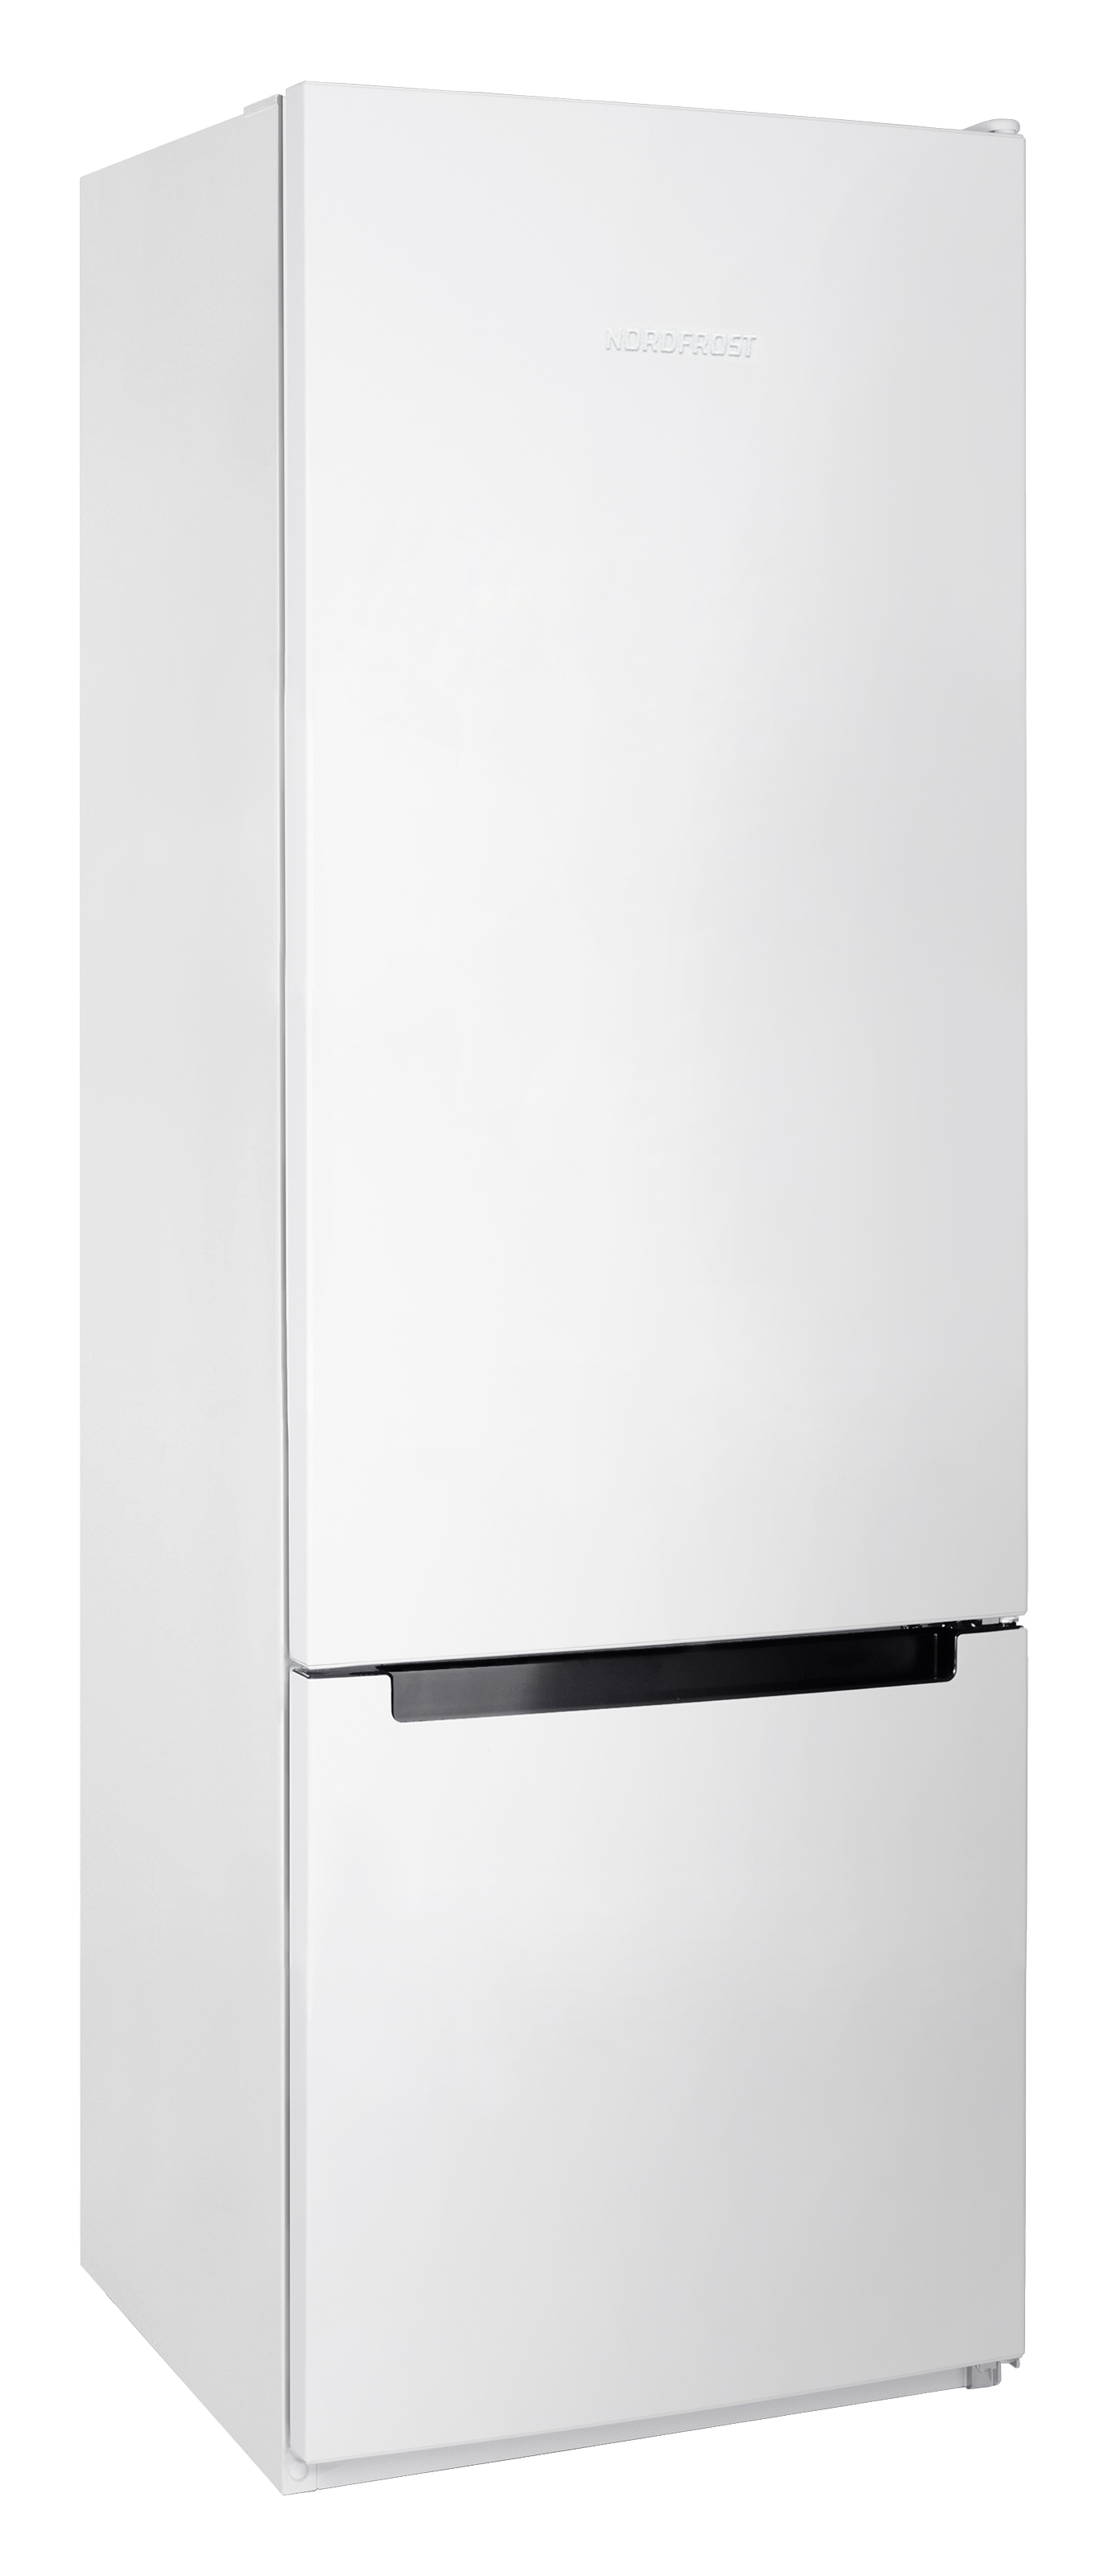 Холодильник NordFrost NRB 124 W белый квадрокоптер cfly faith 2s с камерой 4k hd трехосевой системой стабилизации камеры и gps